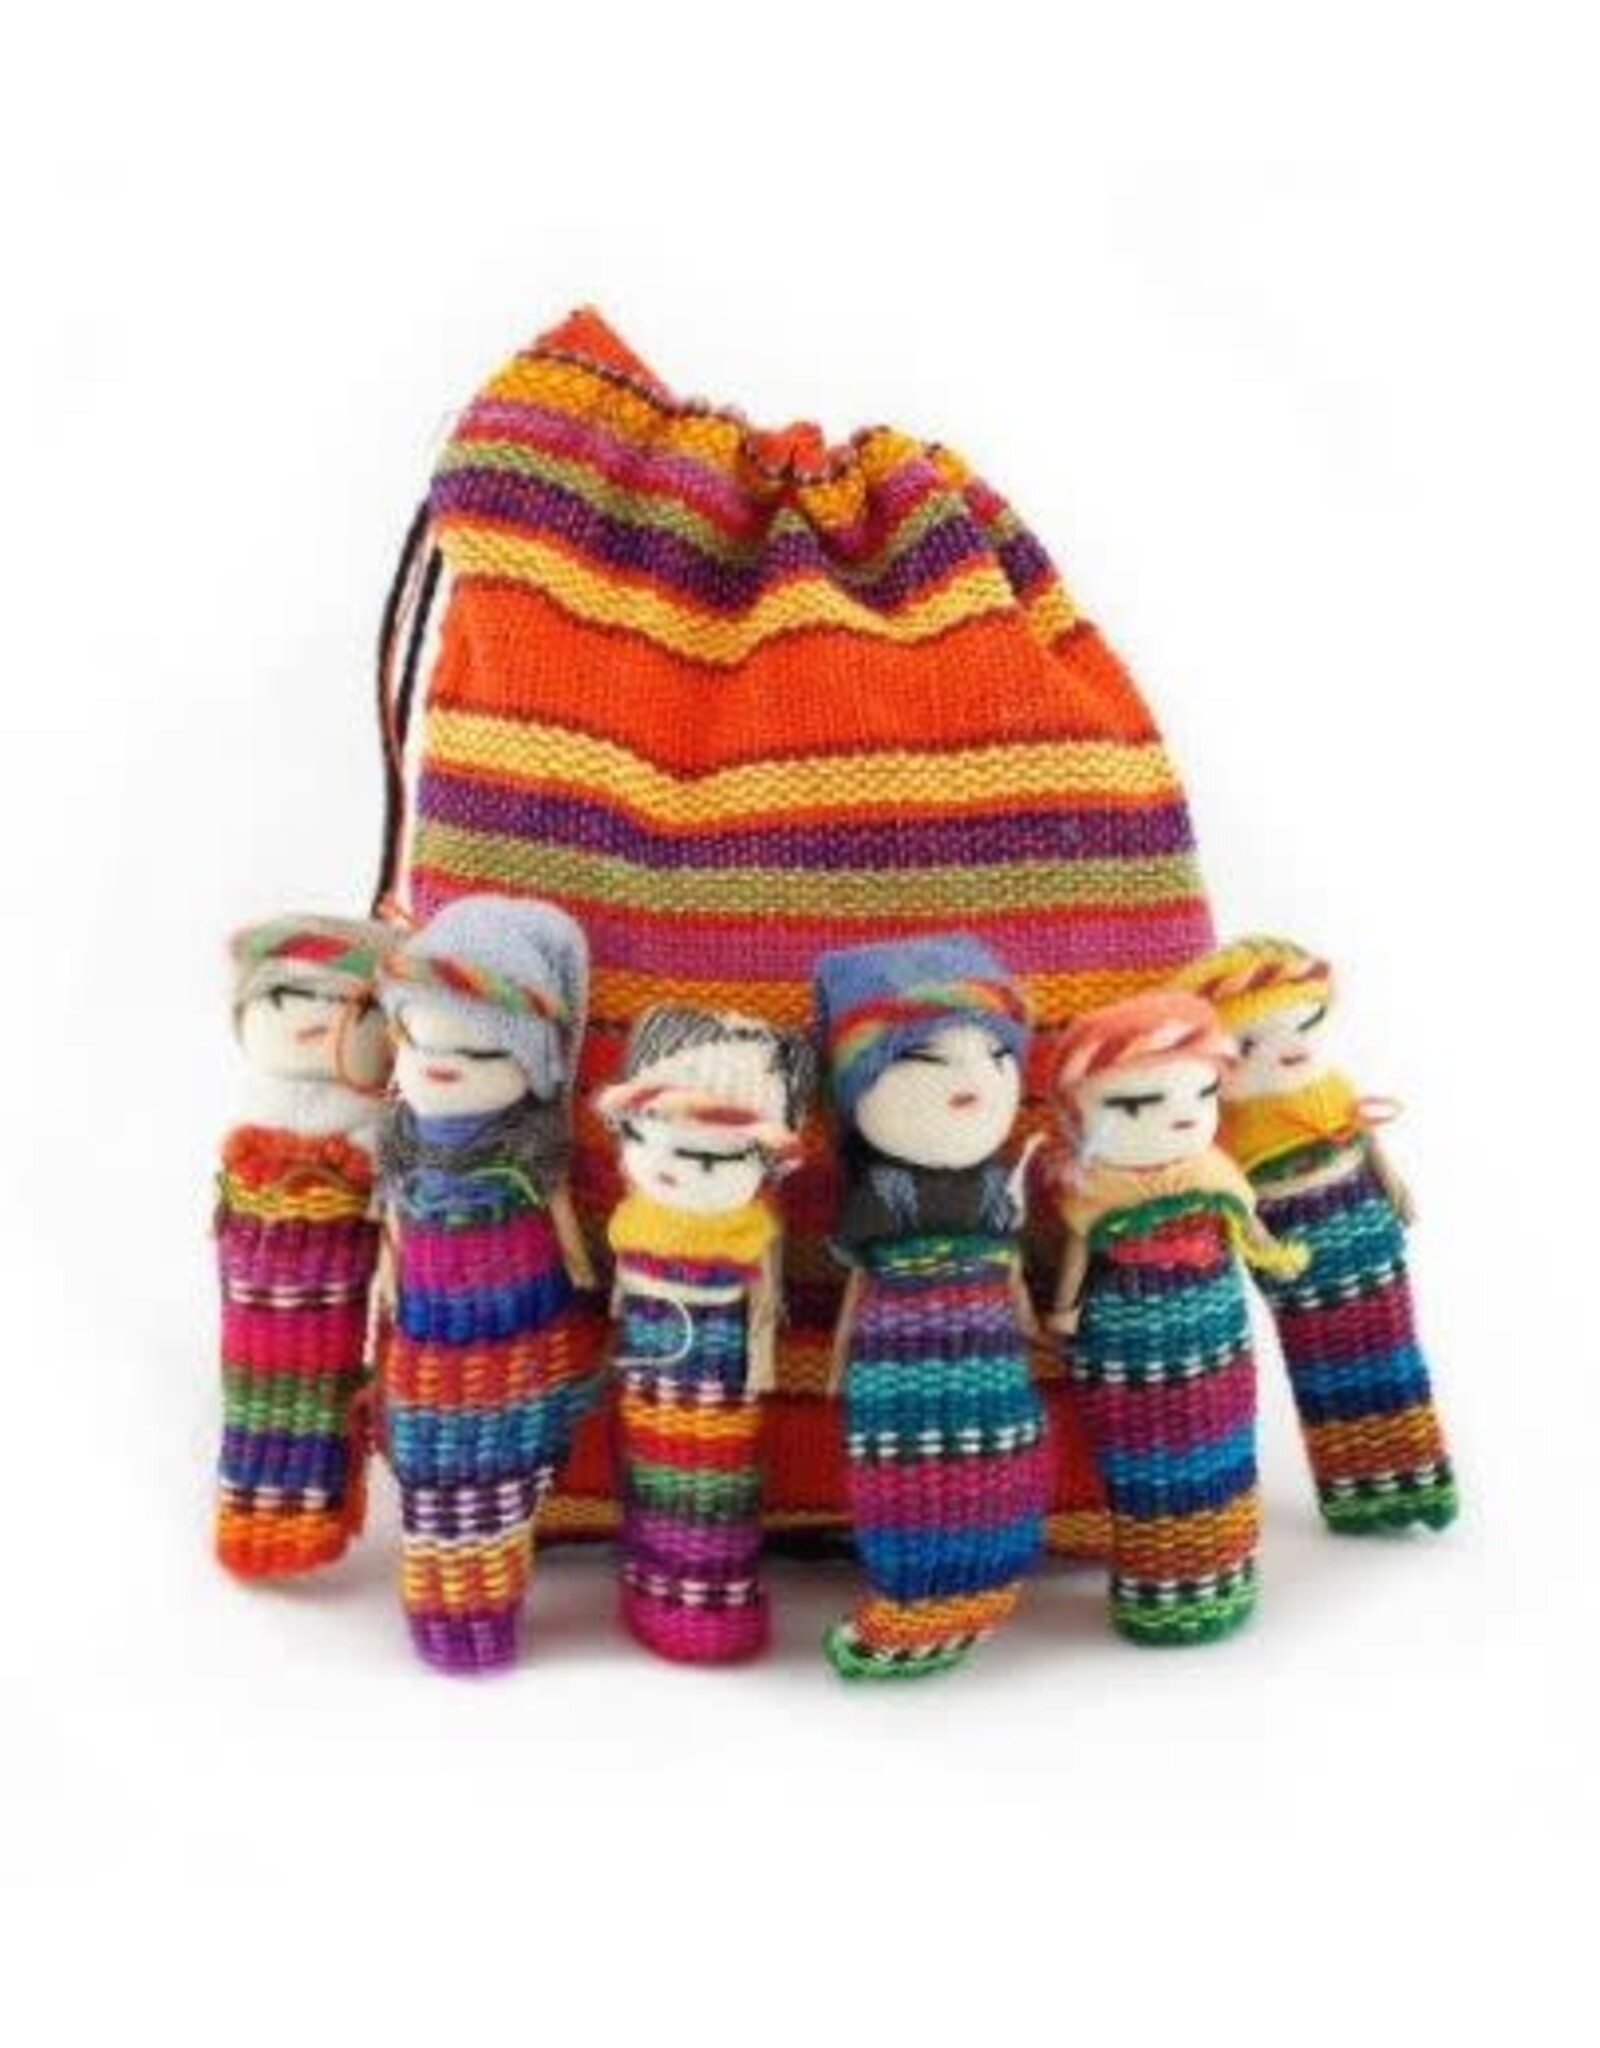 Guatemala Worry Dolls, Guatemala